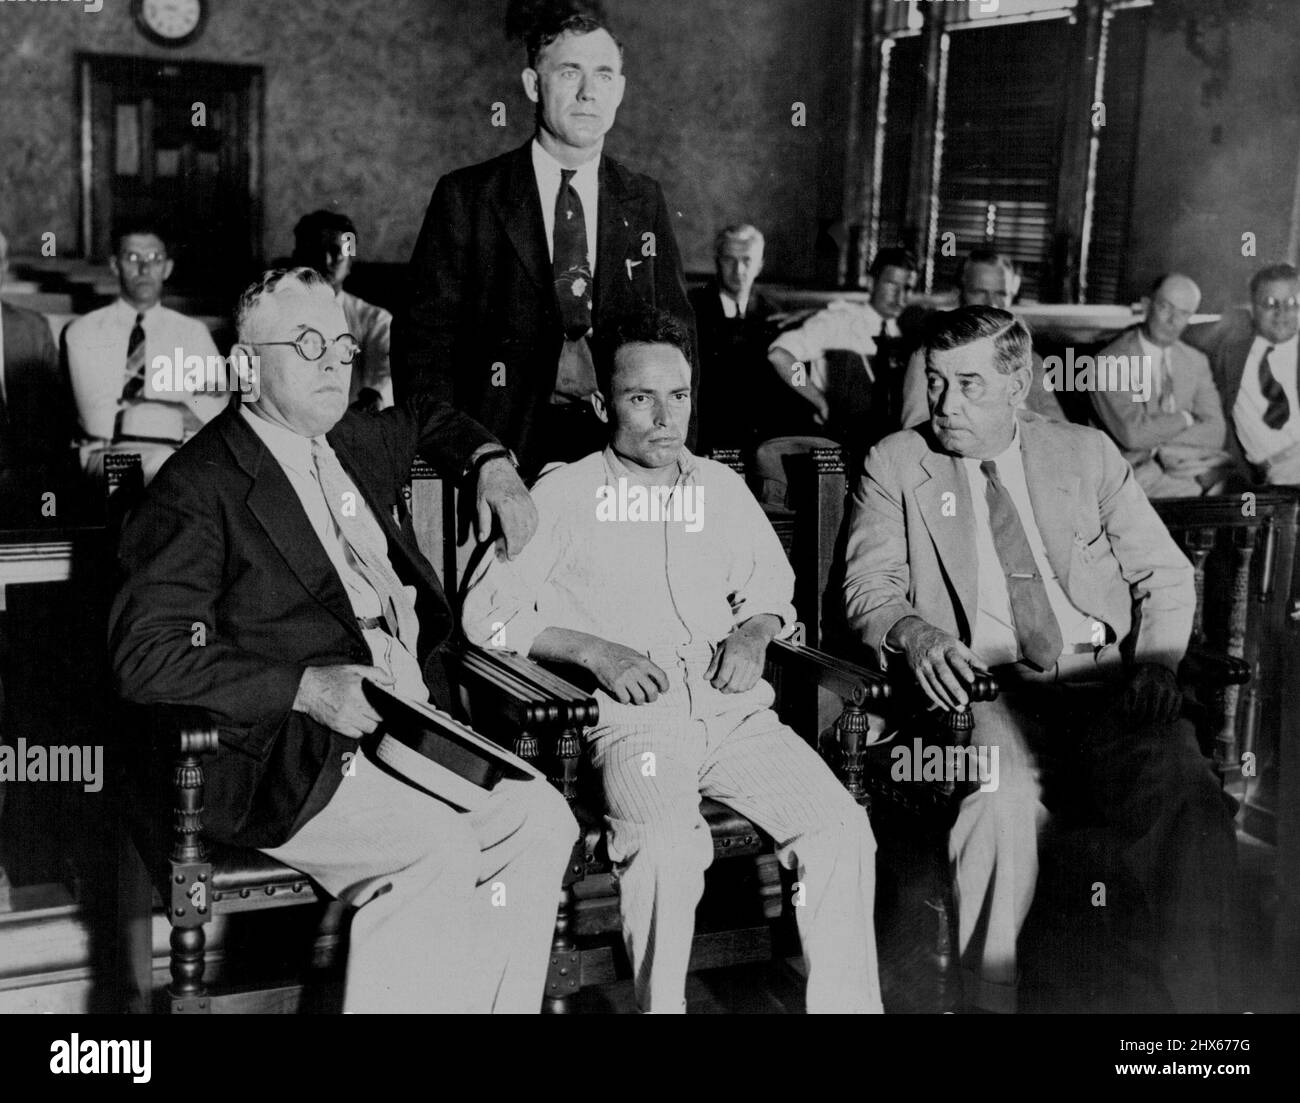 Zangara im Strafgerichtshof von Miami -- Giuseppe Zangara, der kleine Hackensack, N.J. Maurer, im Strafgerichtshof, Miami, Fal., umgeben von Abgeordneten, Warten darauf, für seinen Versuch, den designierten Präsidenten Roosevelt zu ermorden, und die Verwundung des Bürgermeisters Cermak aus Chicago und von vier anderen in der Nacht vom 15. Februar angeklagt zu werden. Die Vertagung wurde verschoben. Es wurde berichtet, dass eine Bewegung zu Fuß in der Stadt Florida zu Lynch ihn war. 17. Februar 1933. (Foto von Associated Press Photo). Stockfoto